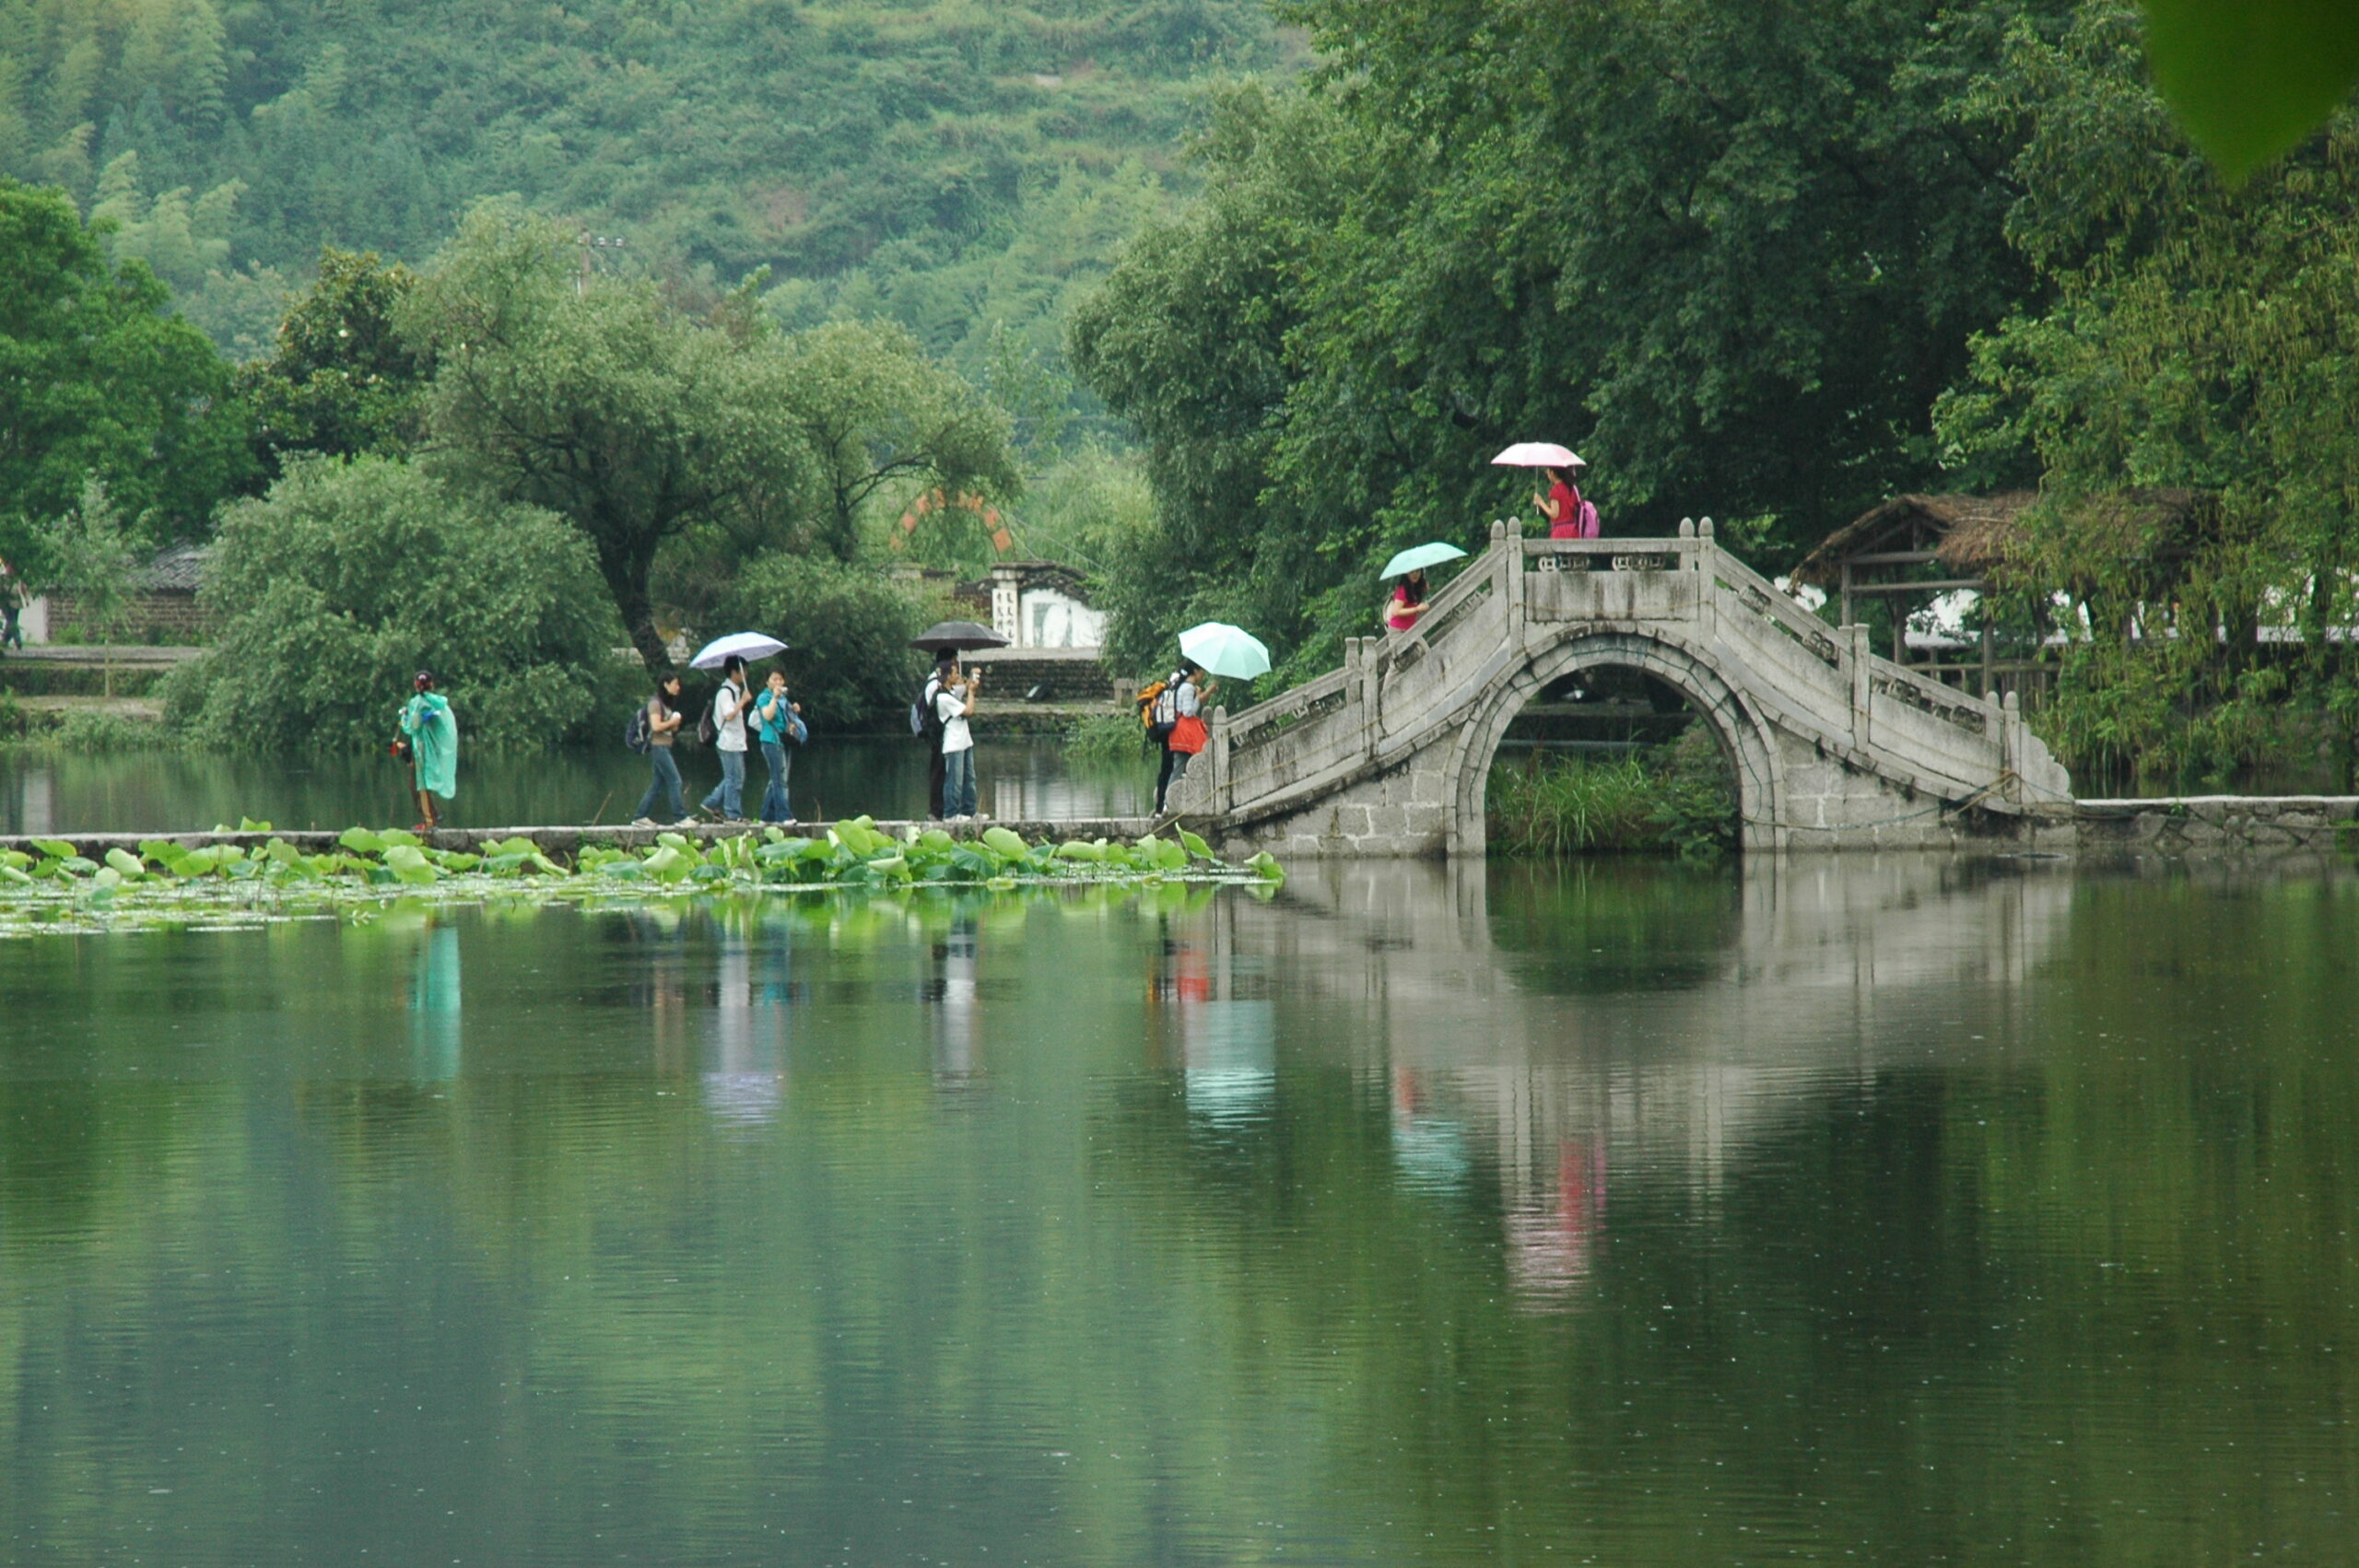 Students crossing a bridge